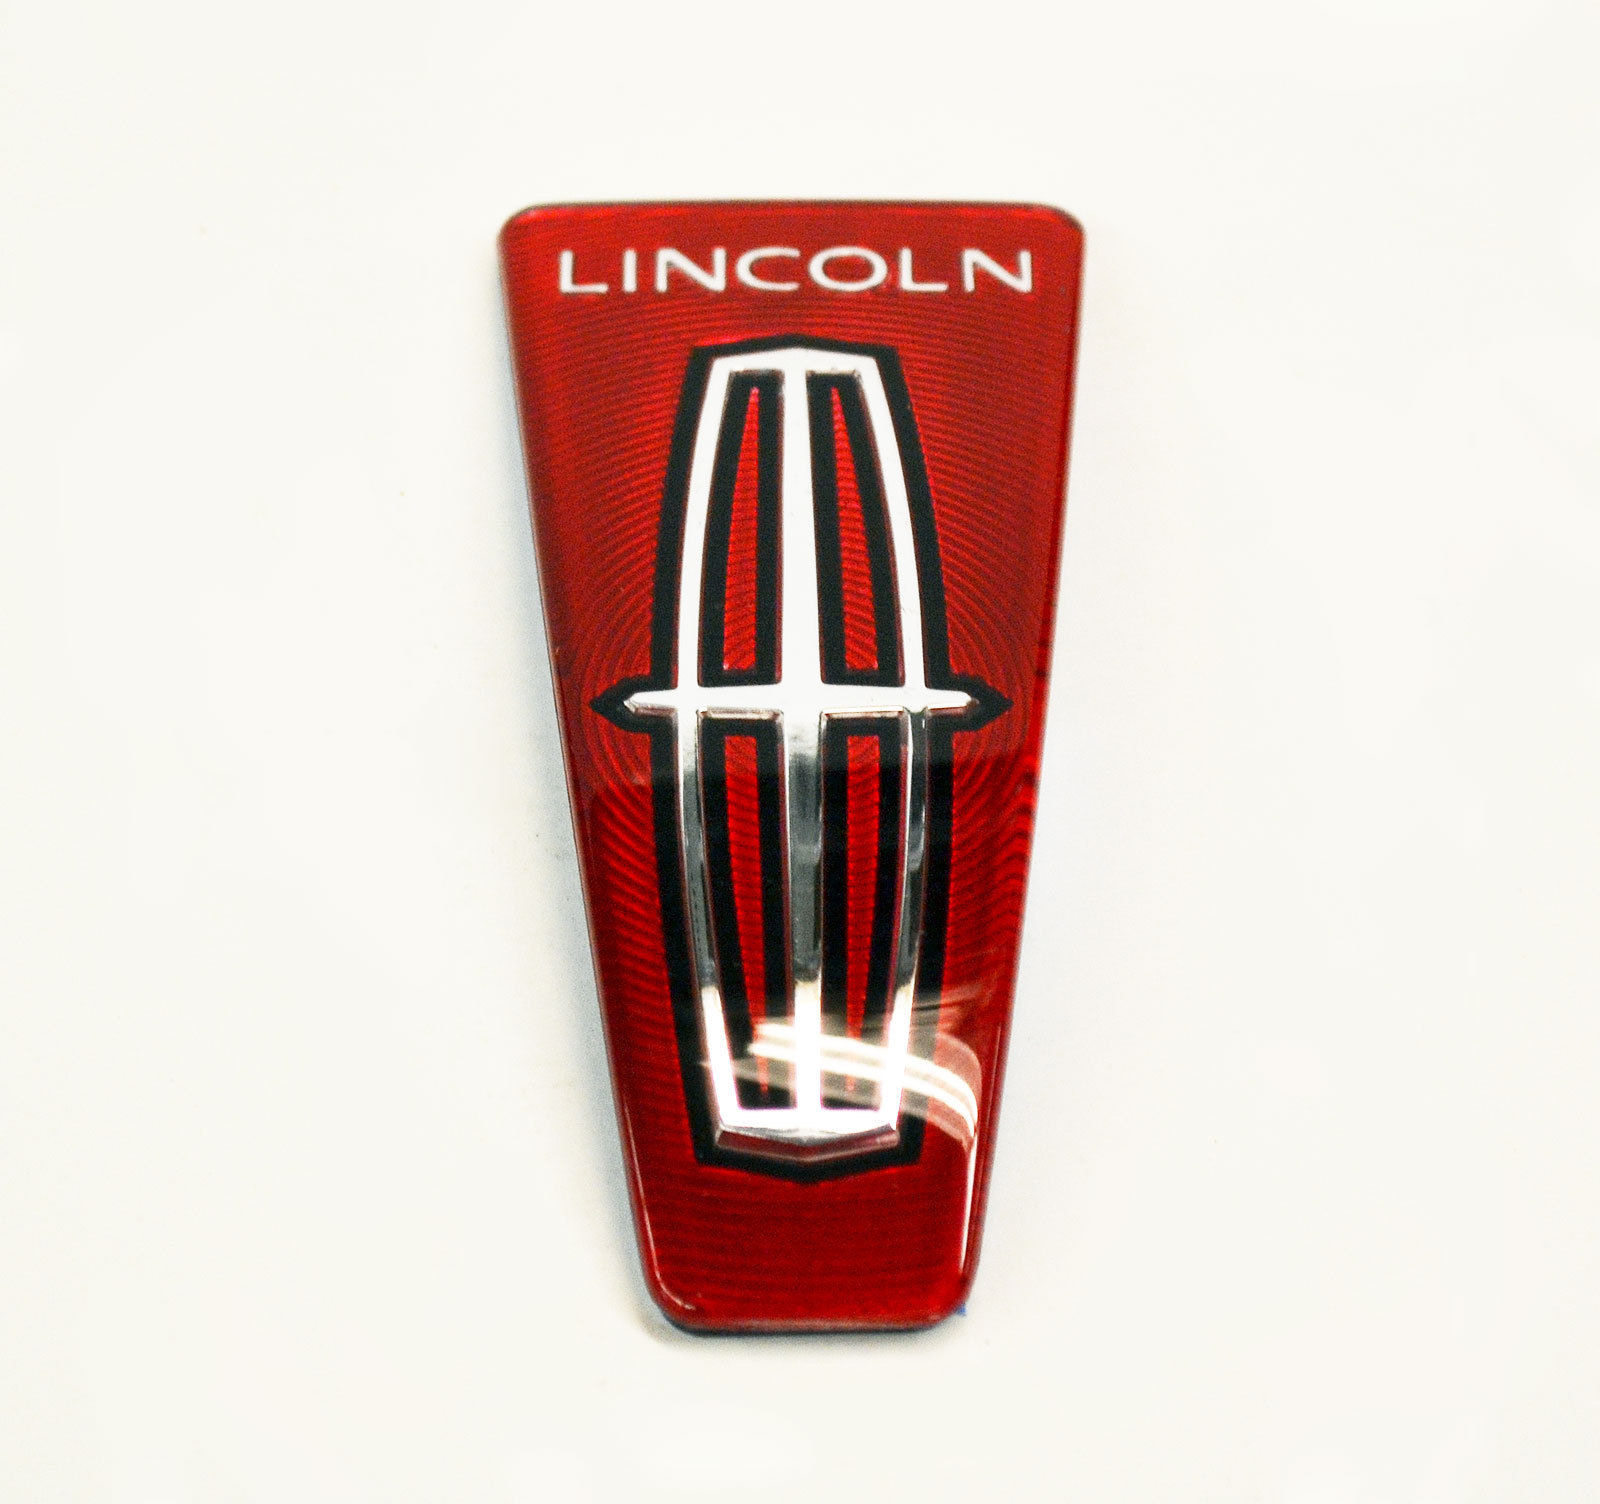 Значок линкольн. Значок Линкольн на капот. Lincoln шильдик. Линкольн навигатор значок. Шильдик передний Lincoln Navigator 2.